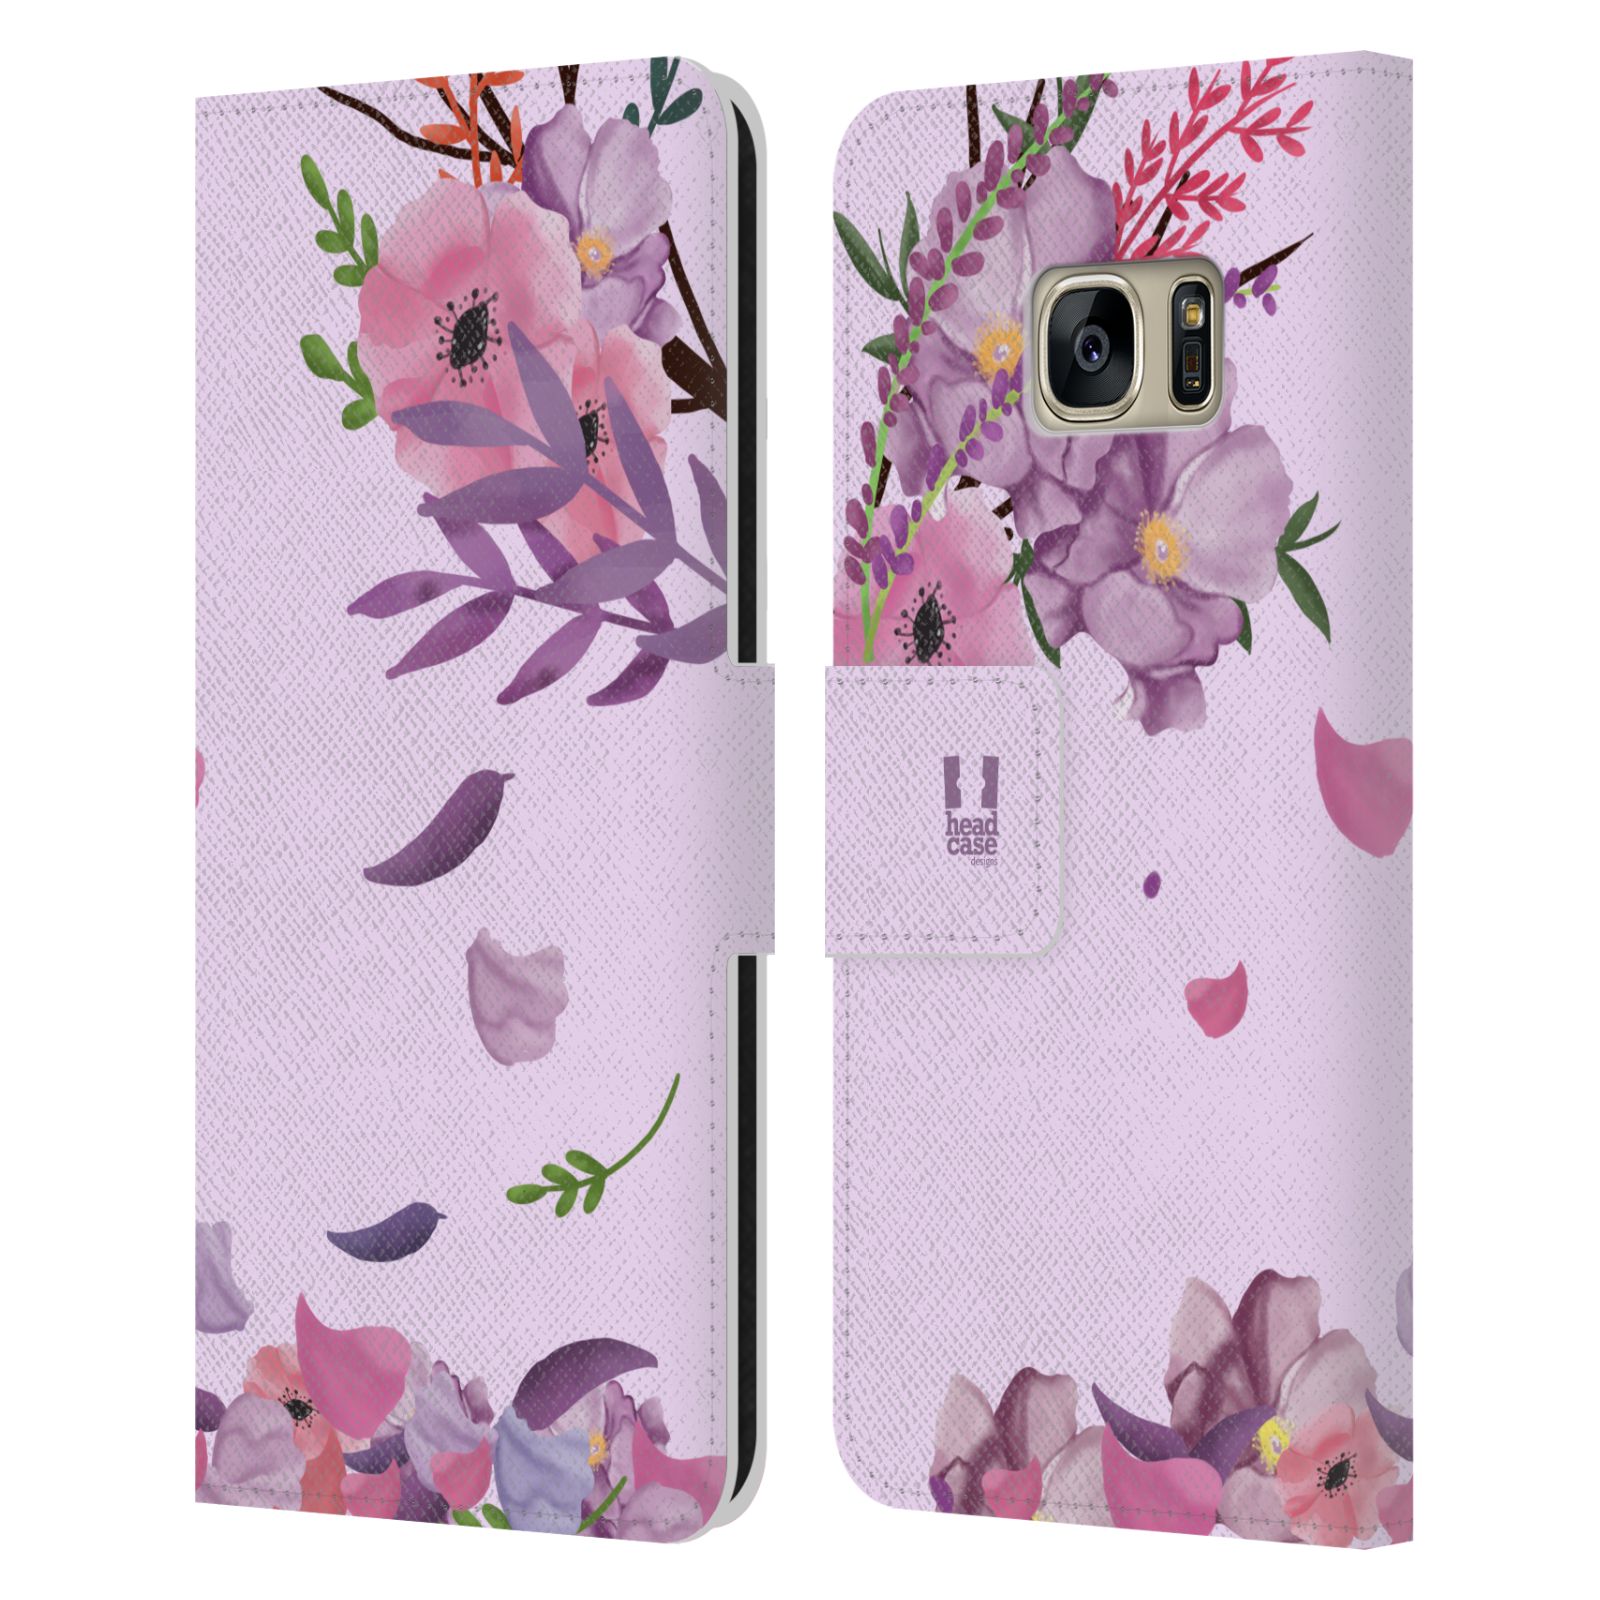 Pouzdro na mobil Samsung Galaxy S7 - HEAD CASE - Rozkvetlé růže a listy růžová